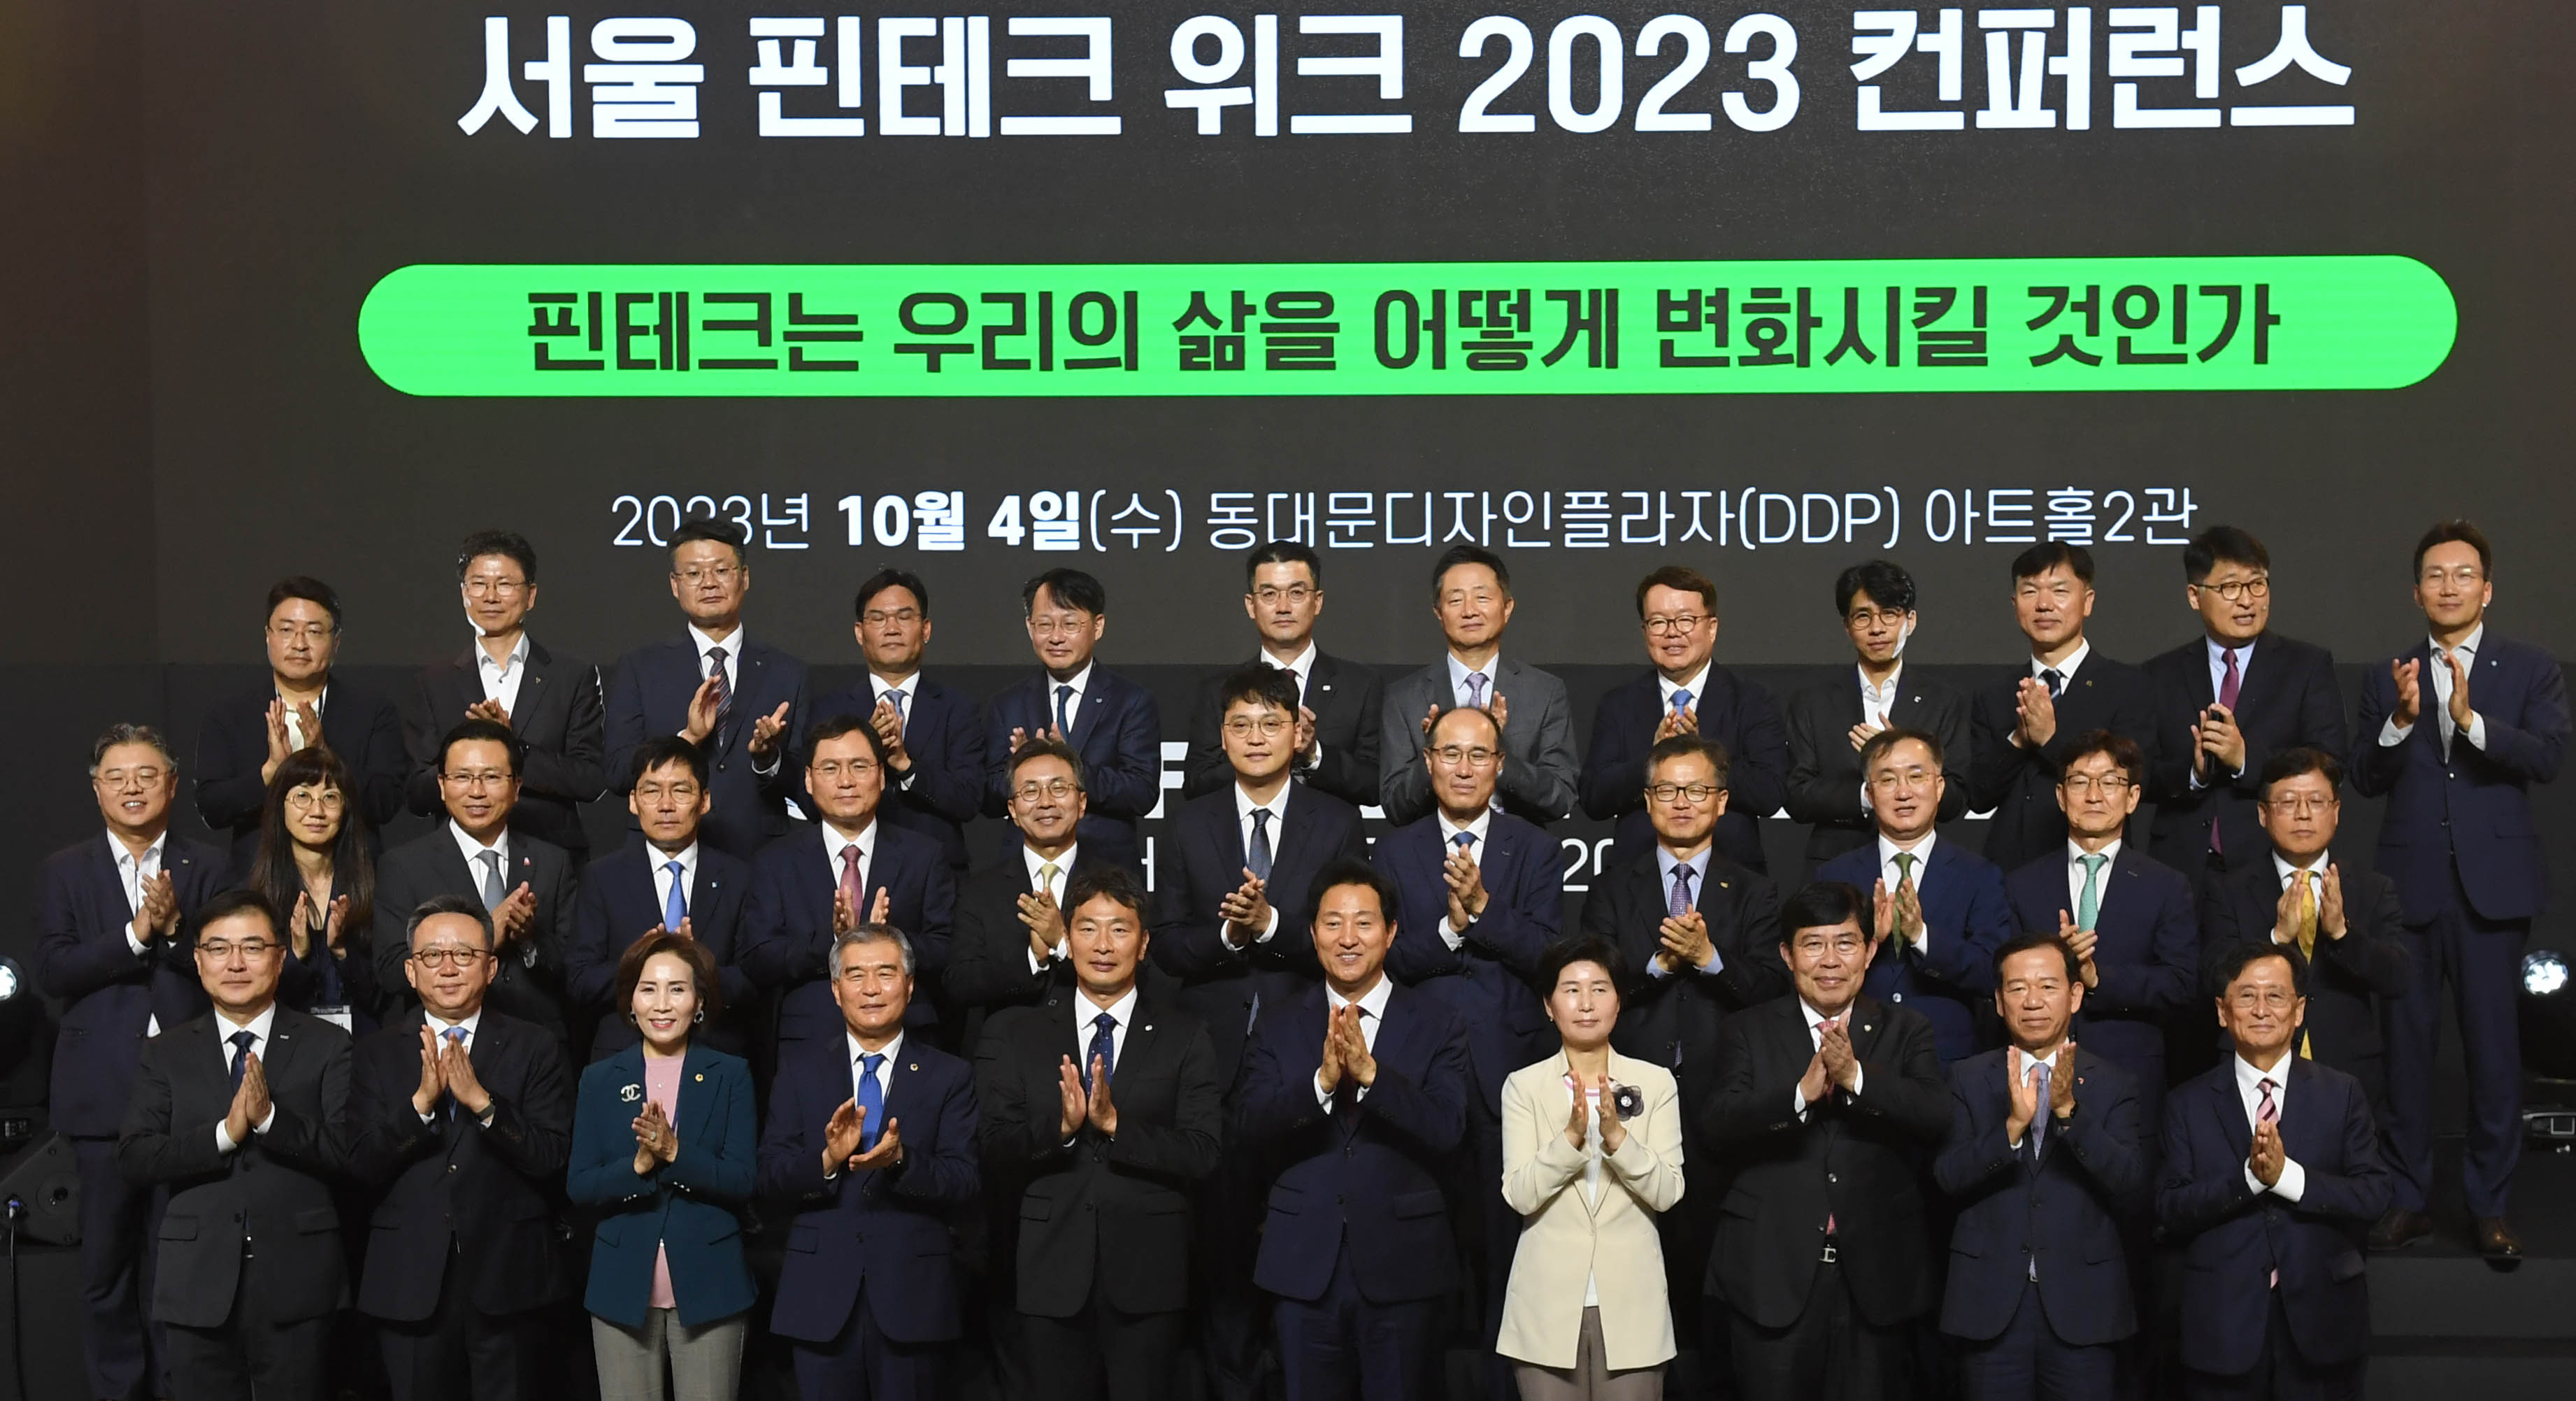 '핀테크 위크 2023' 개막 …'핀테크, 우리 삶 어떻게 변화시킬까'